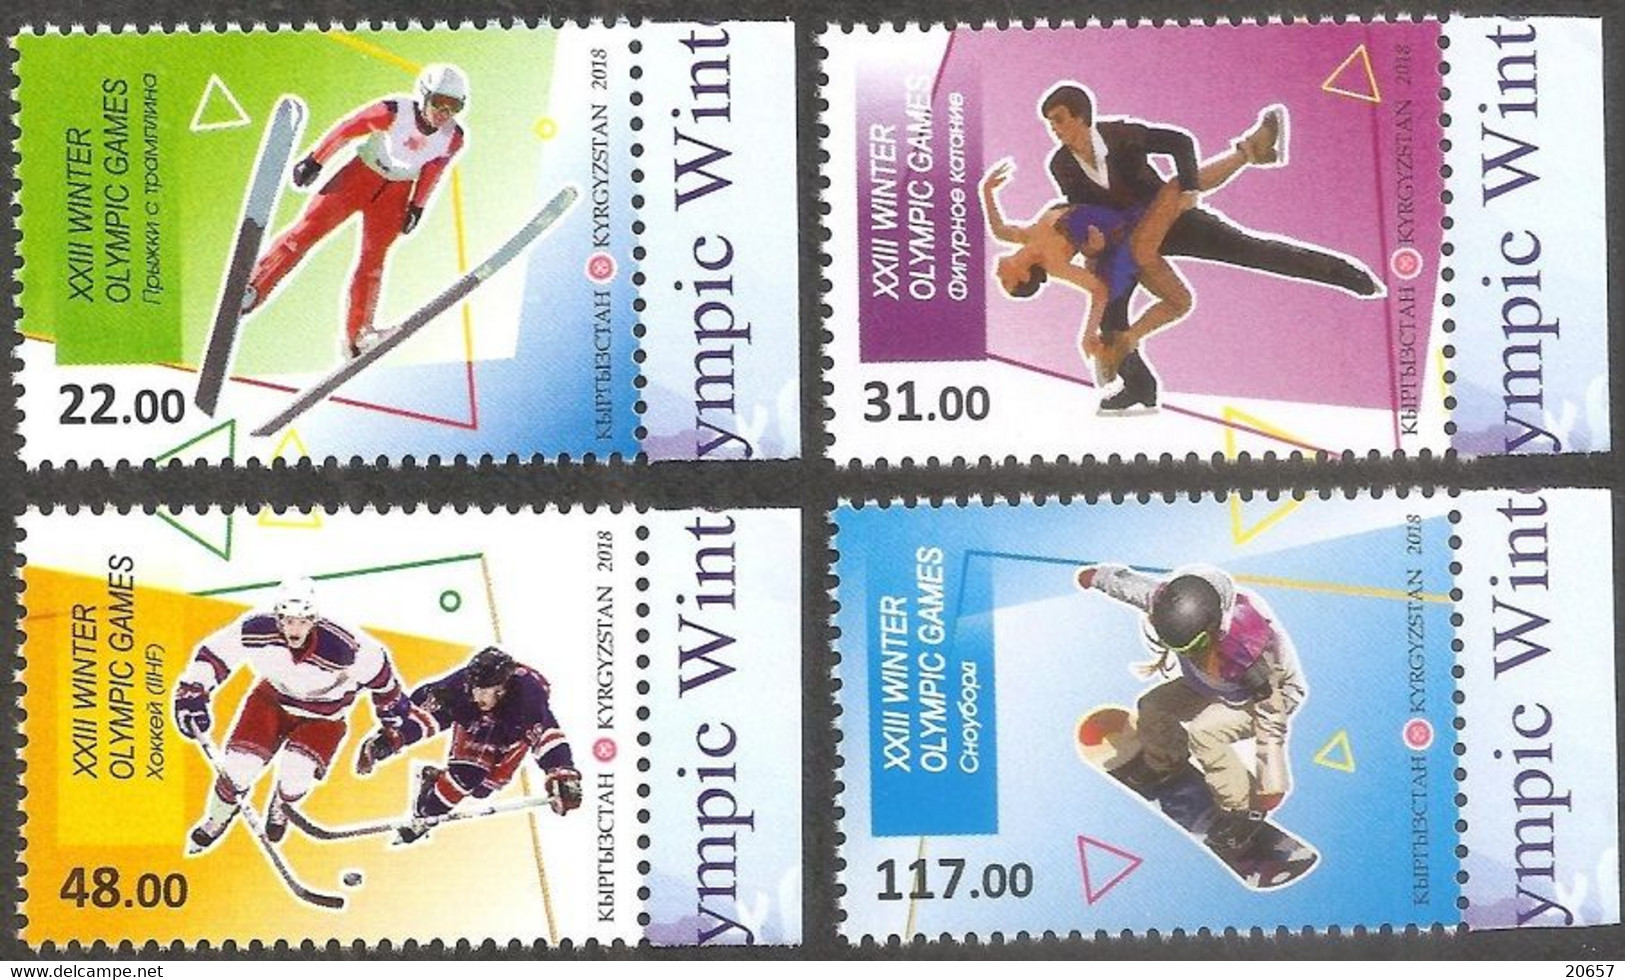 Kirghizstan Kyrgyzstan 0751/54 JO Pyeongchang Corée, Korea, Hockey, Patinage, Saut à Ski, Snowboard - Winter 2018: Pyeongchang